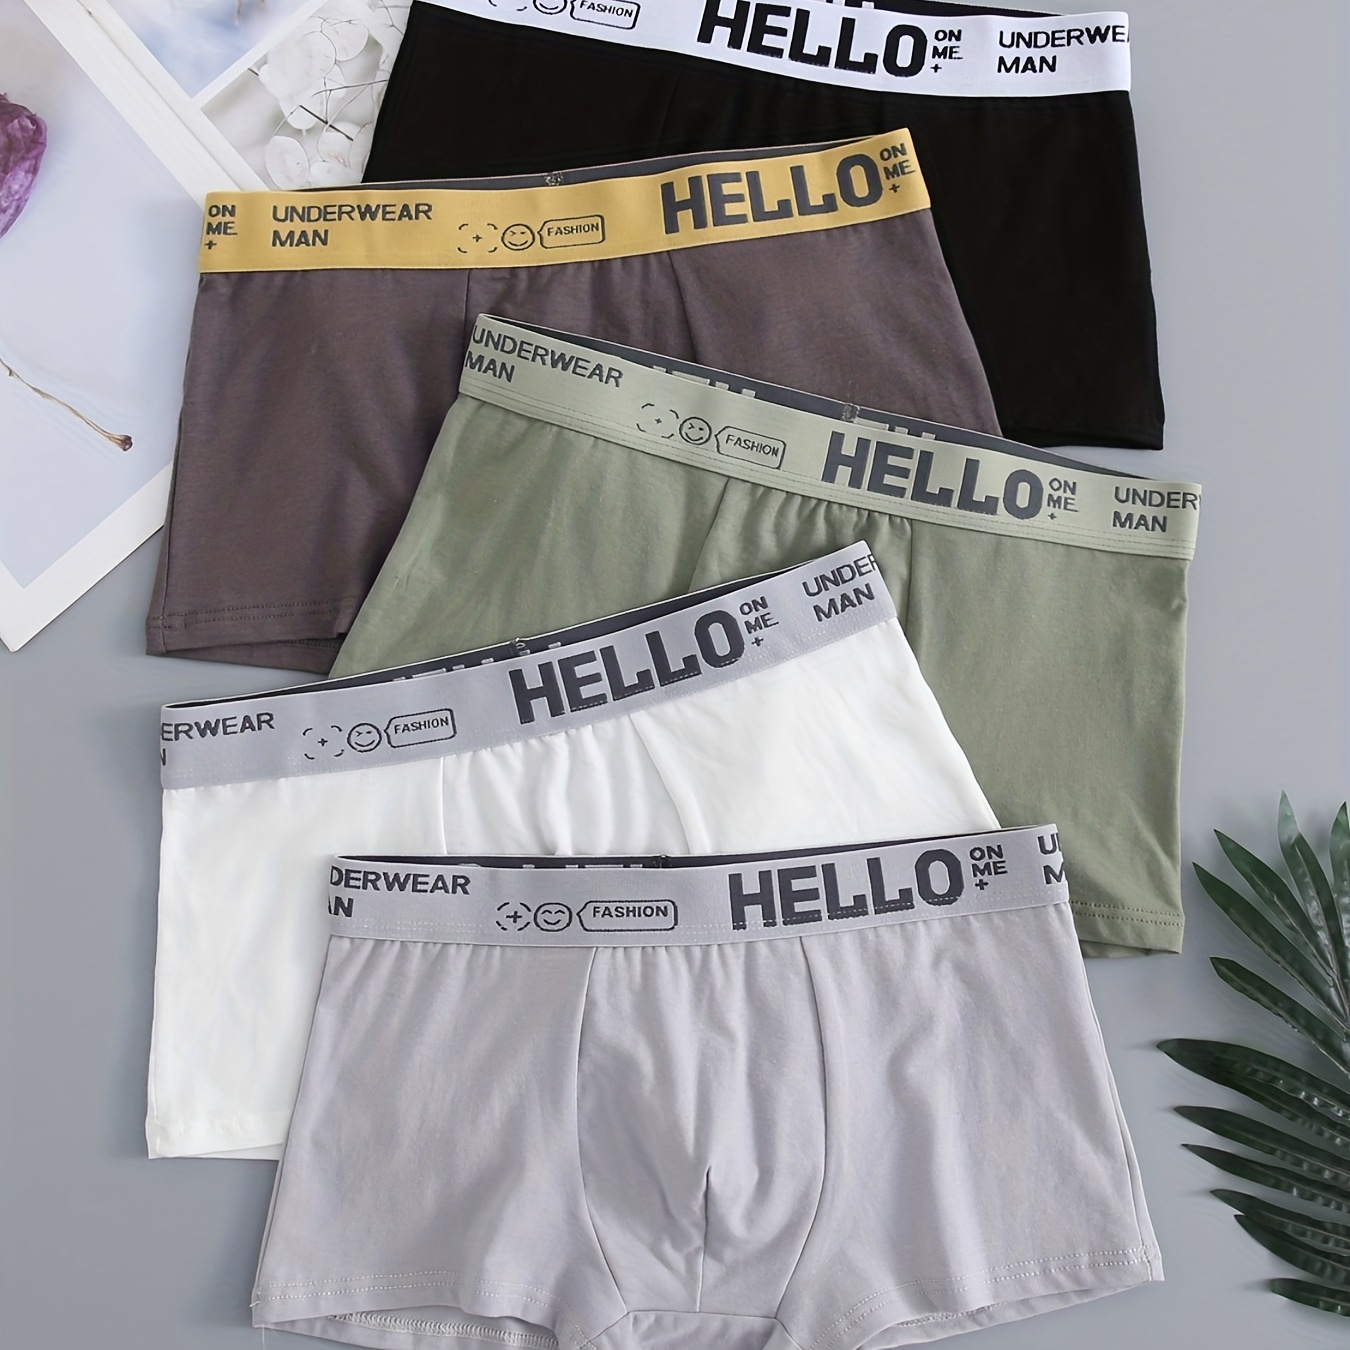 

5pcs Men's Simple Cotton Boxer Briefs With Letter Print Waistband Comfortable Solid Color Underwear Underpants